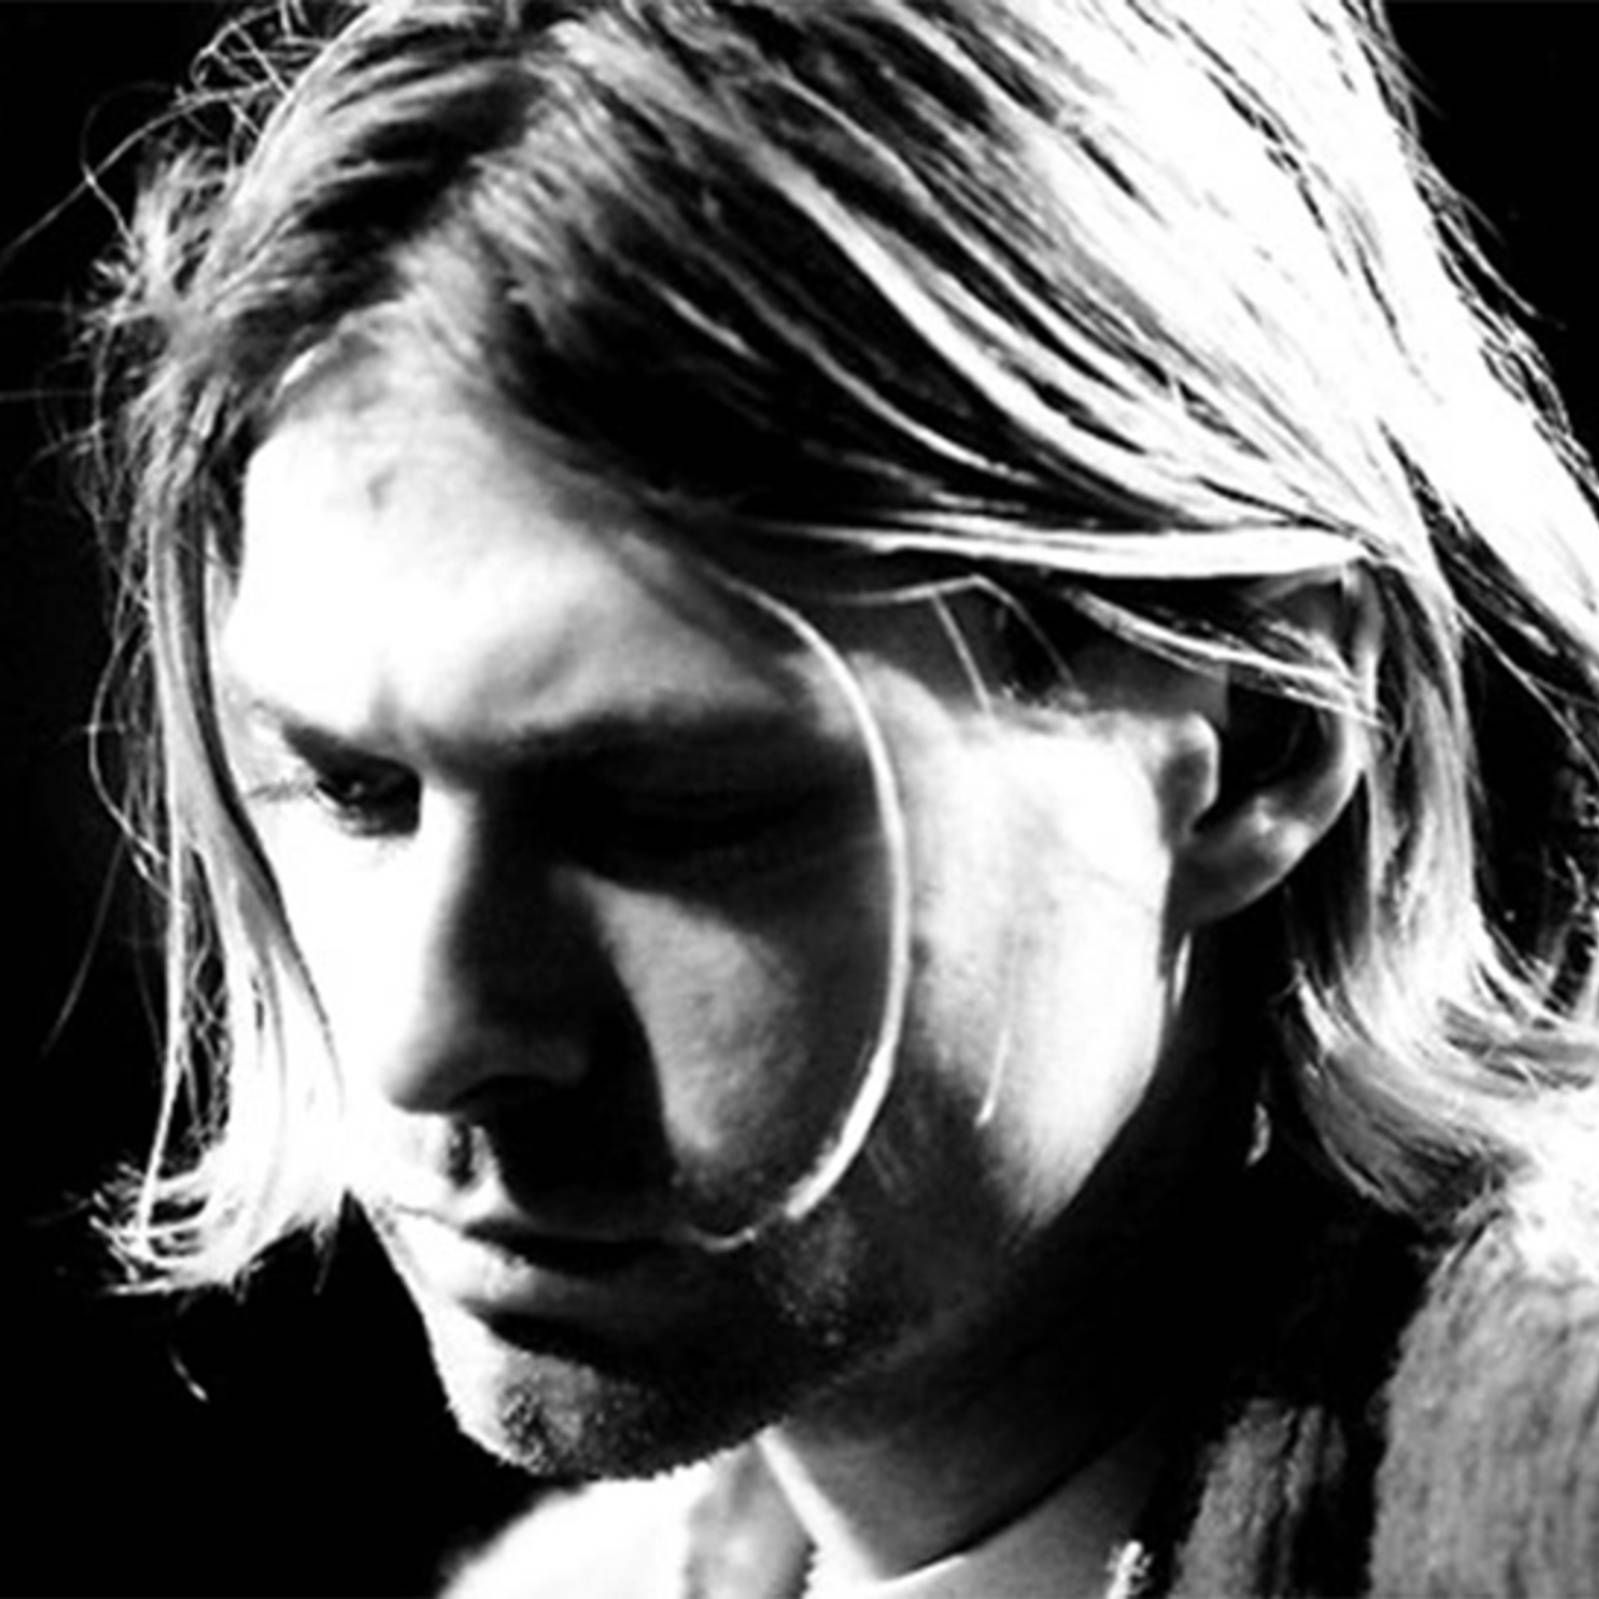 180 grados - Kurt Cobain - 05/04/24